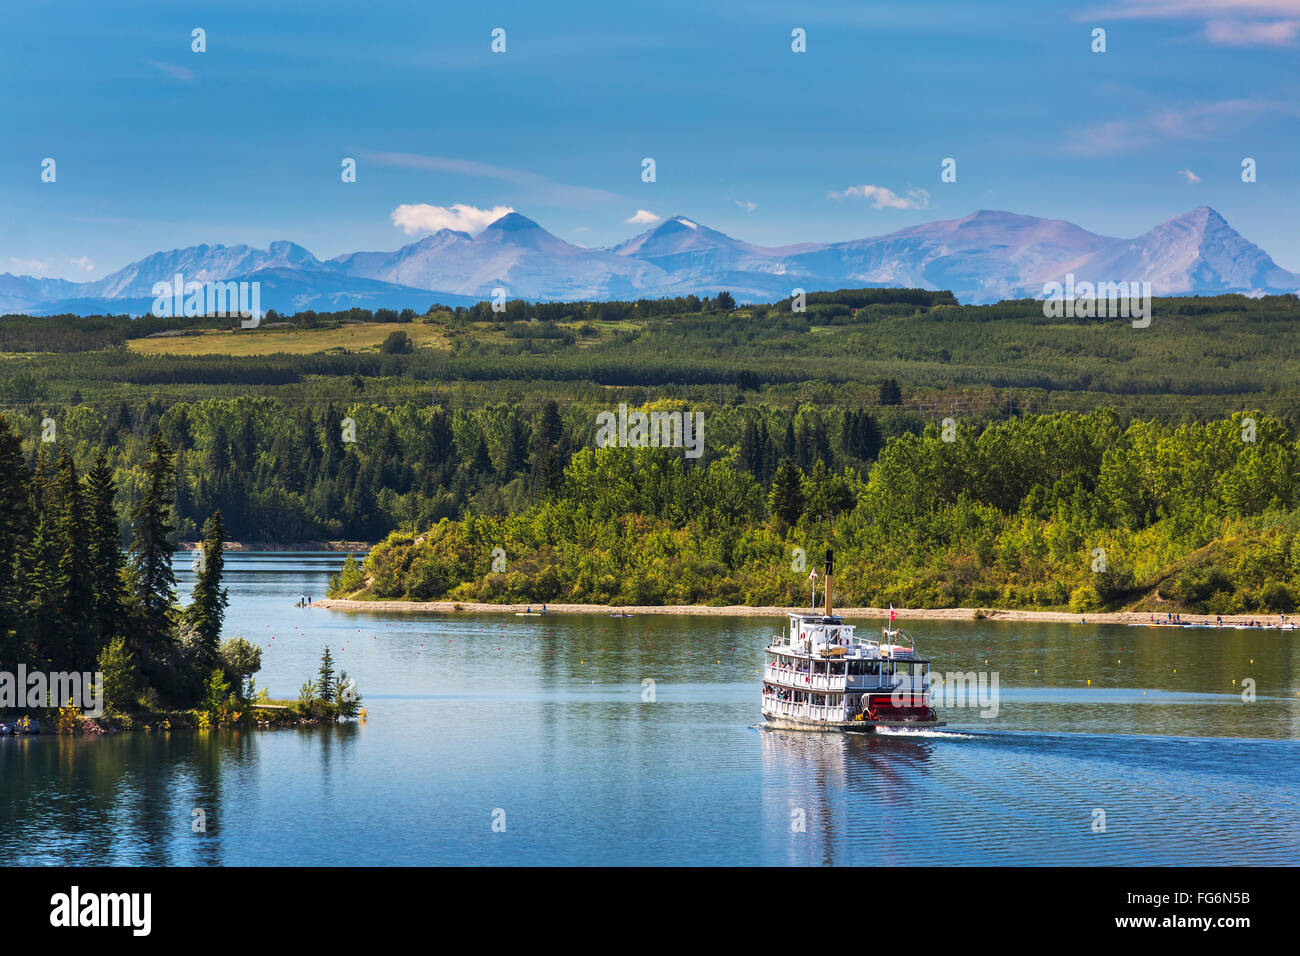 Pedalo' barca sul lago con viale alberato costa, colline e montagne sullo sfondo e il cielo blu e nuvole; Calgary, Alberta, Canada Foto Stock